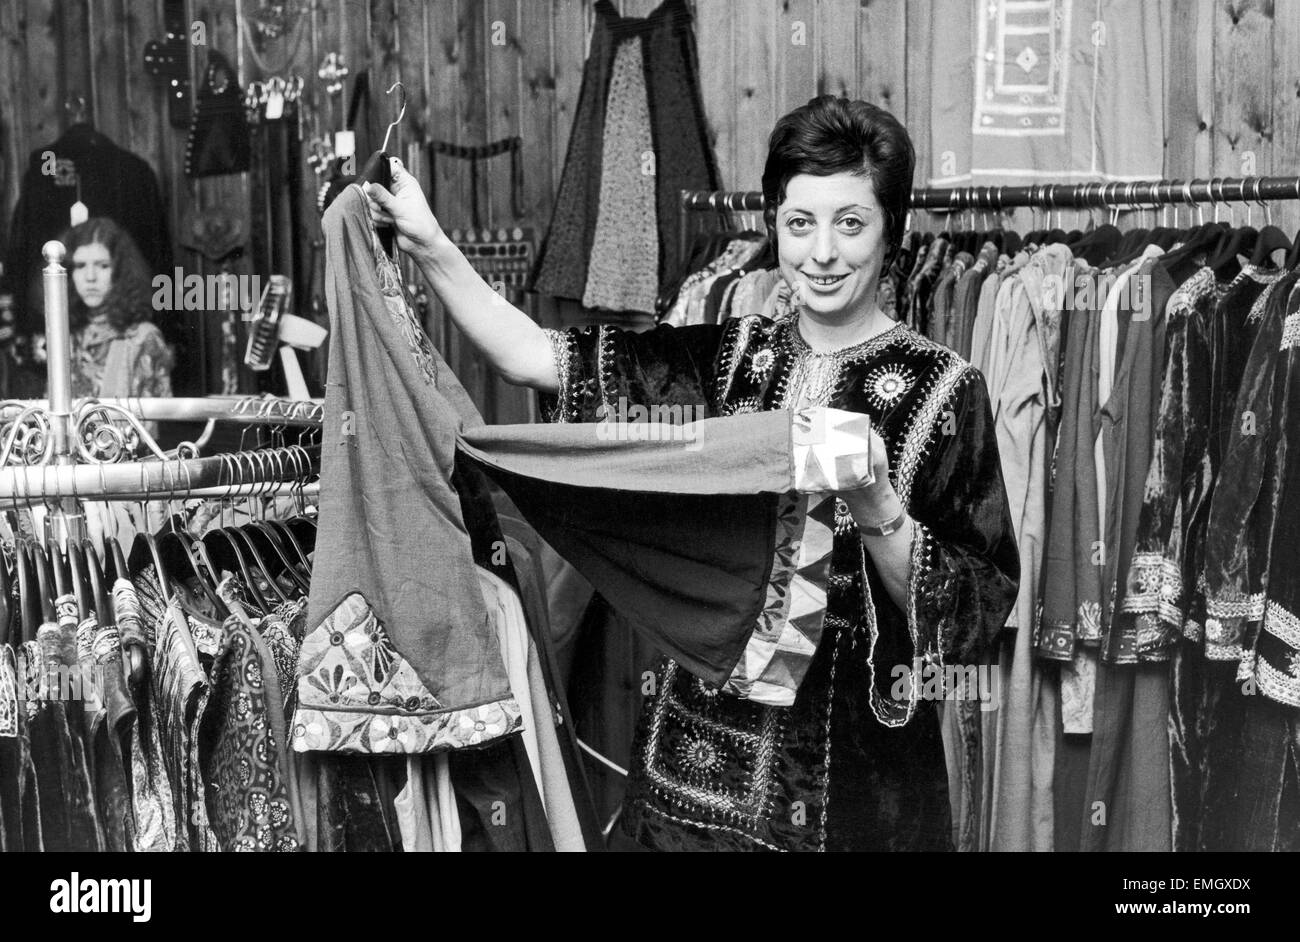 Betty Van Gelder, propriétaire d'un magasin de vêtements à Hampstead, portant une de ses chemises en velours qui comme tous les autres vêtements vient d'Hampstead Bazaar. 4e octobre 1970. Banque D'Images